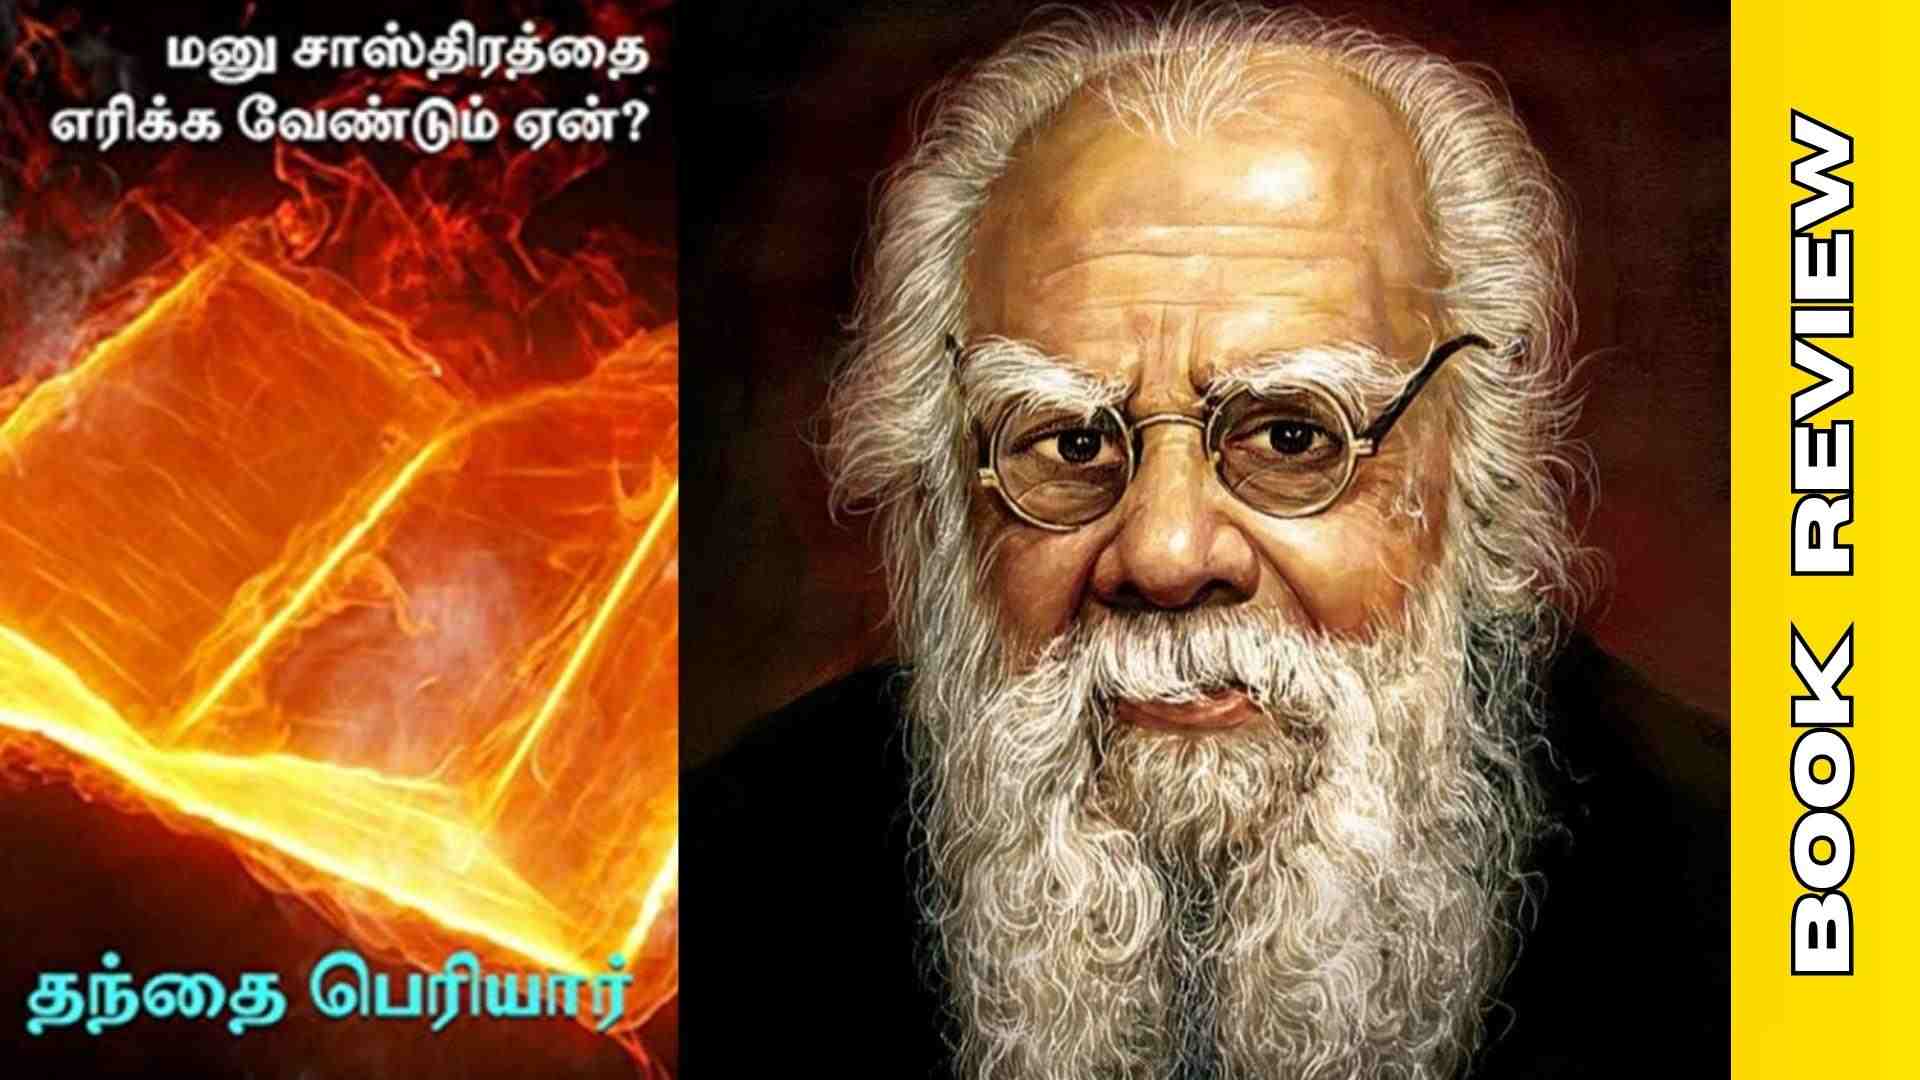 Manu Saasthiraththai Erikka Vendum Yen? - Platform Tamil